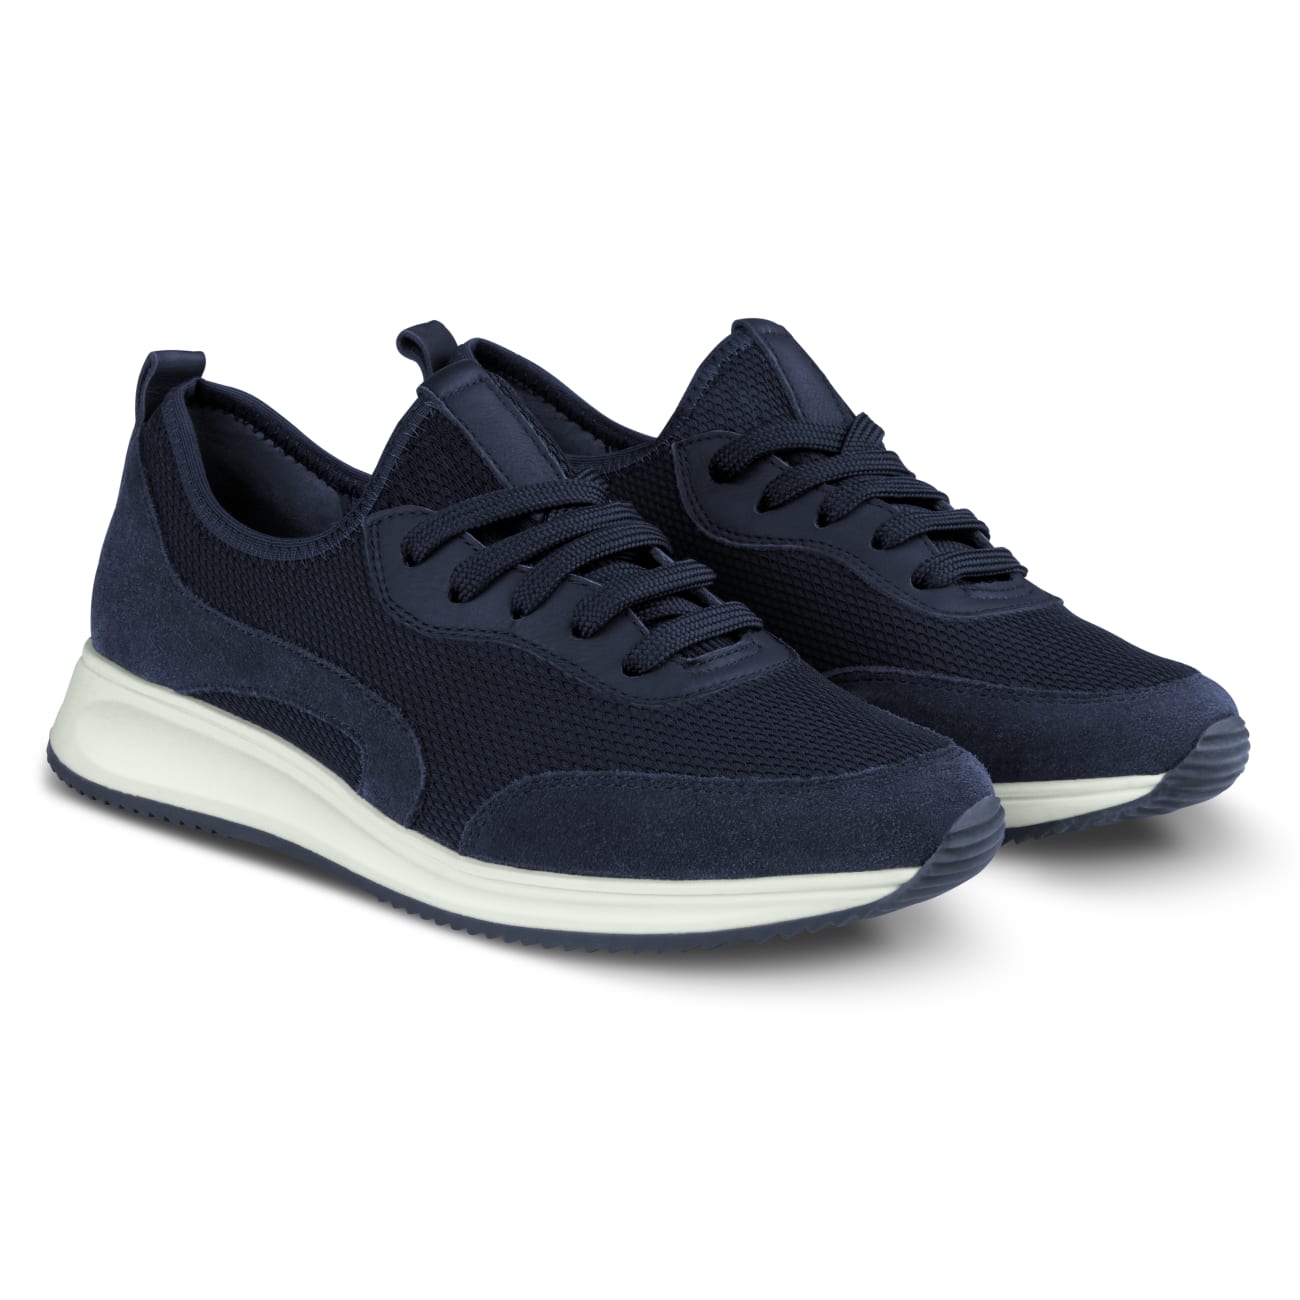 Soft Sneaker Materialmix Marine – modischer und bequemer Schuh für Hallux valgus und empfindliche Füße von LaShoe.de